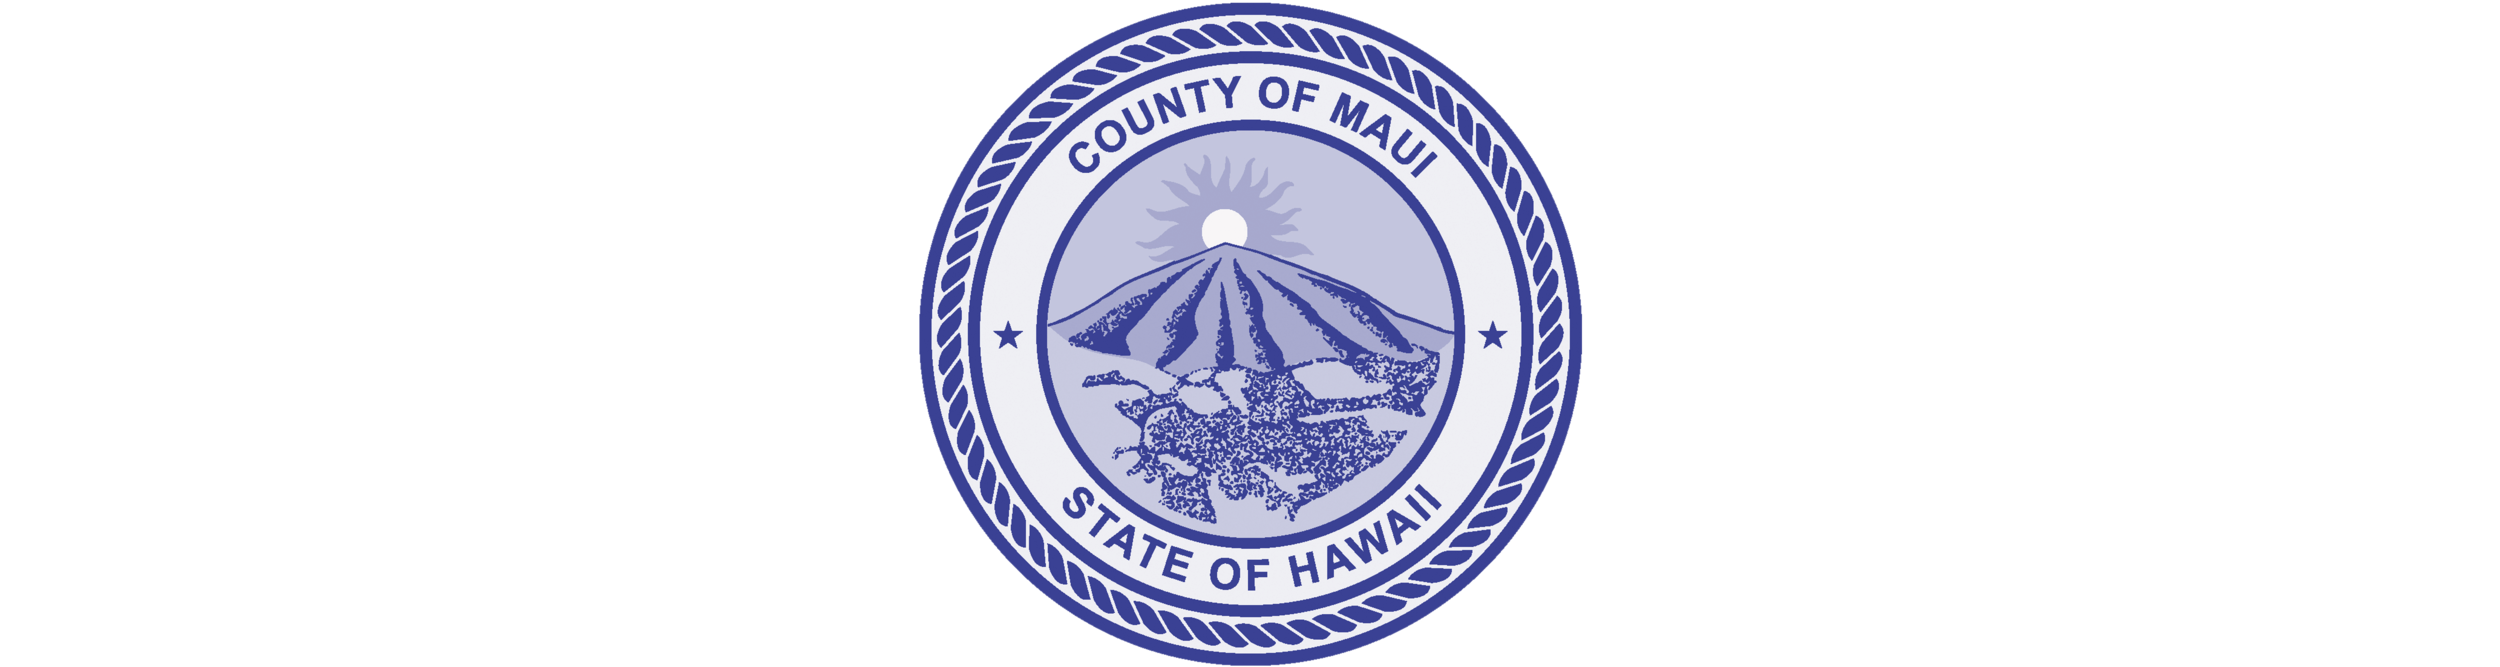 HPHA-mga mapagkukunan-logo-Maui County.png